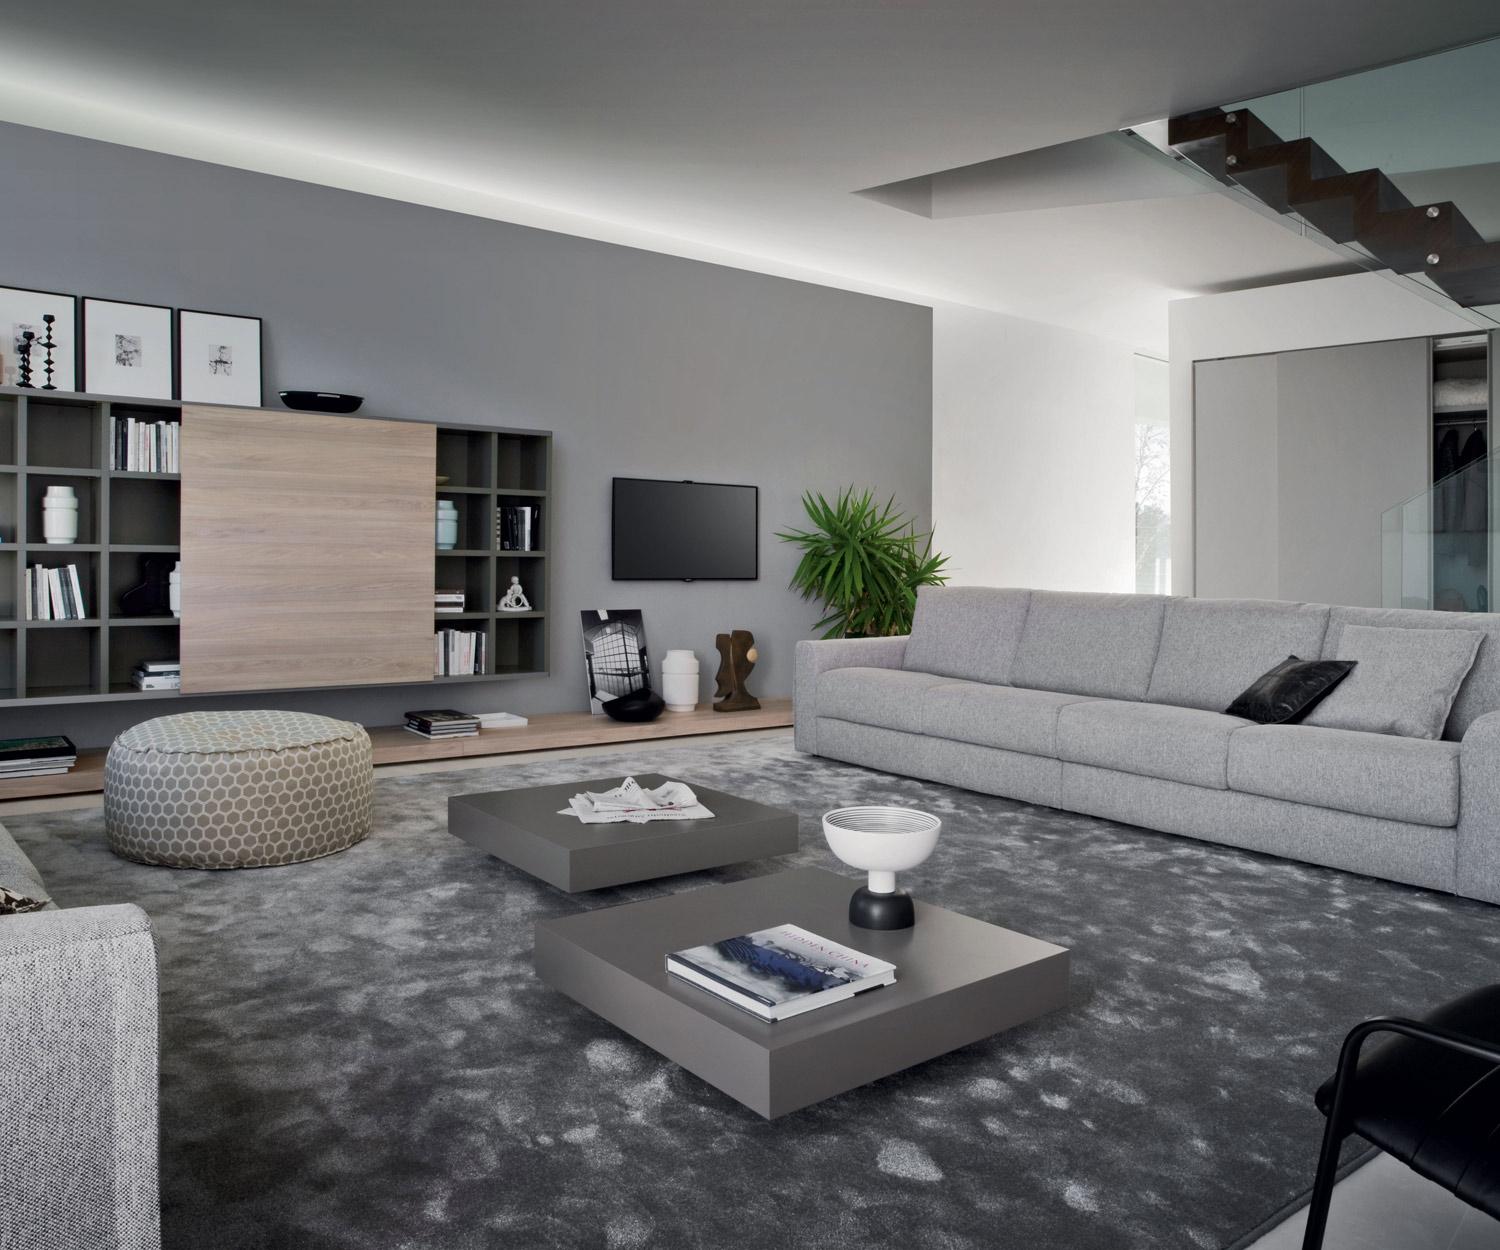 Design Couchtisch Schatten #stuhl #couchtisch #wohnzimmer #tisch #zimmergestaltung ©Livarea.de